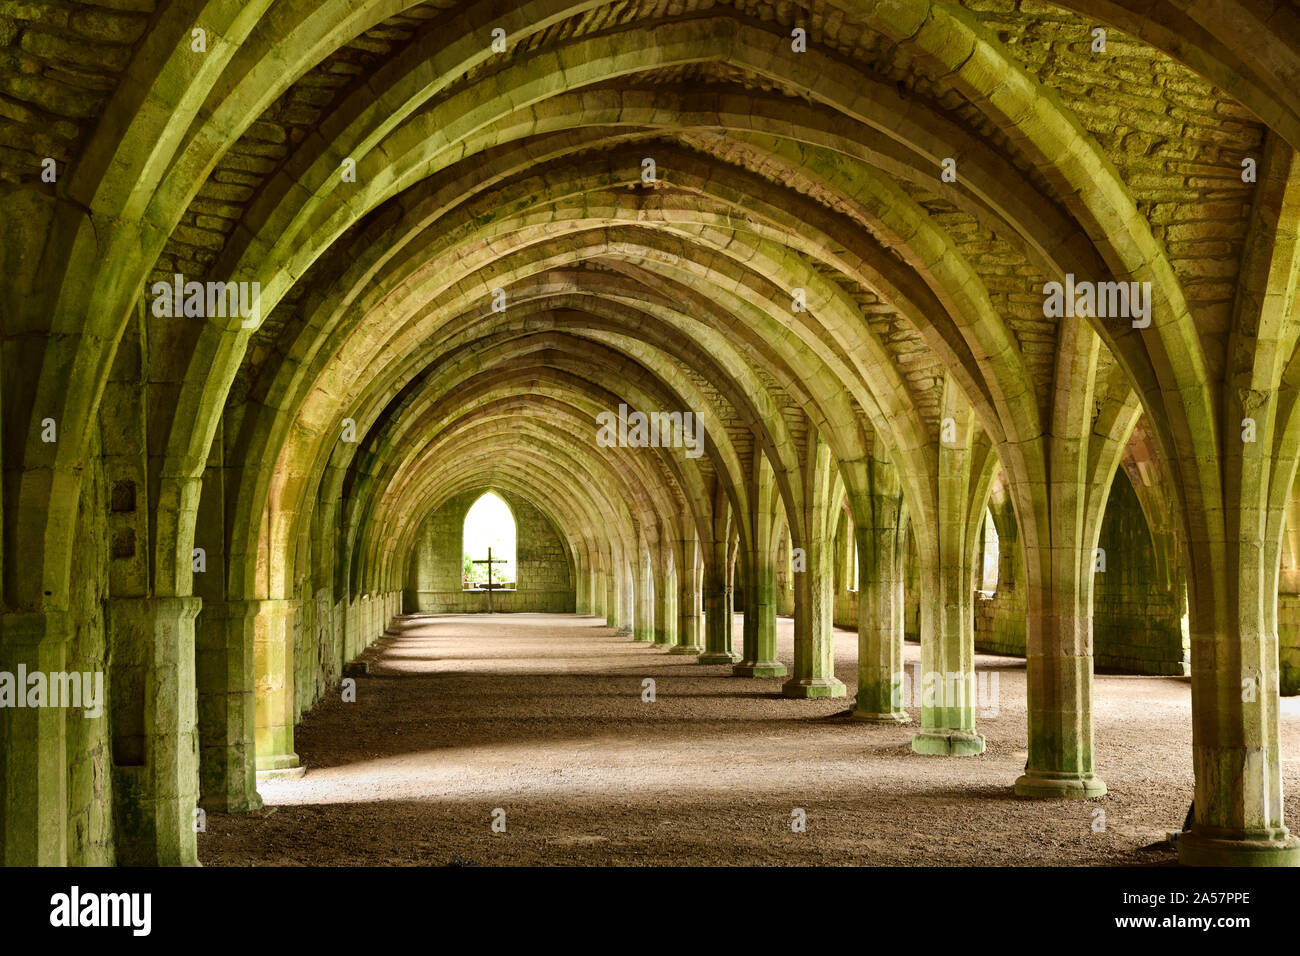 L'abbaye de Fountains ruines monastère cistercien de plafond à voûte en pierre voûtée des moines cellarium avec fenêtre à croisée Yorkshire Angleterre du Nord Banque D'Images